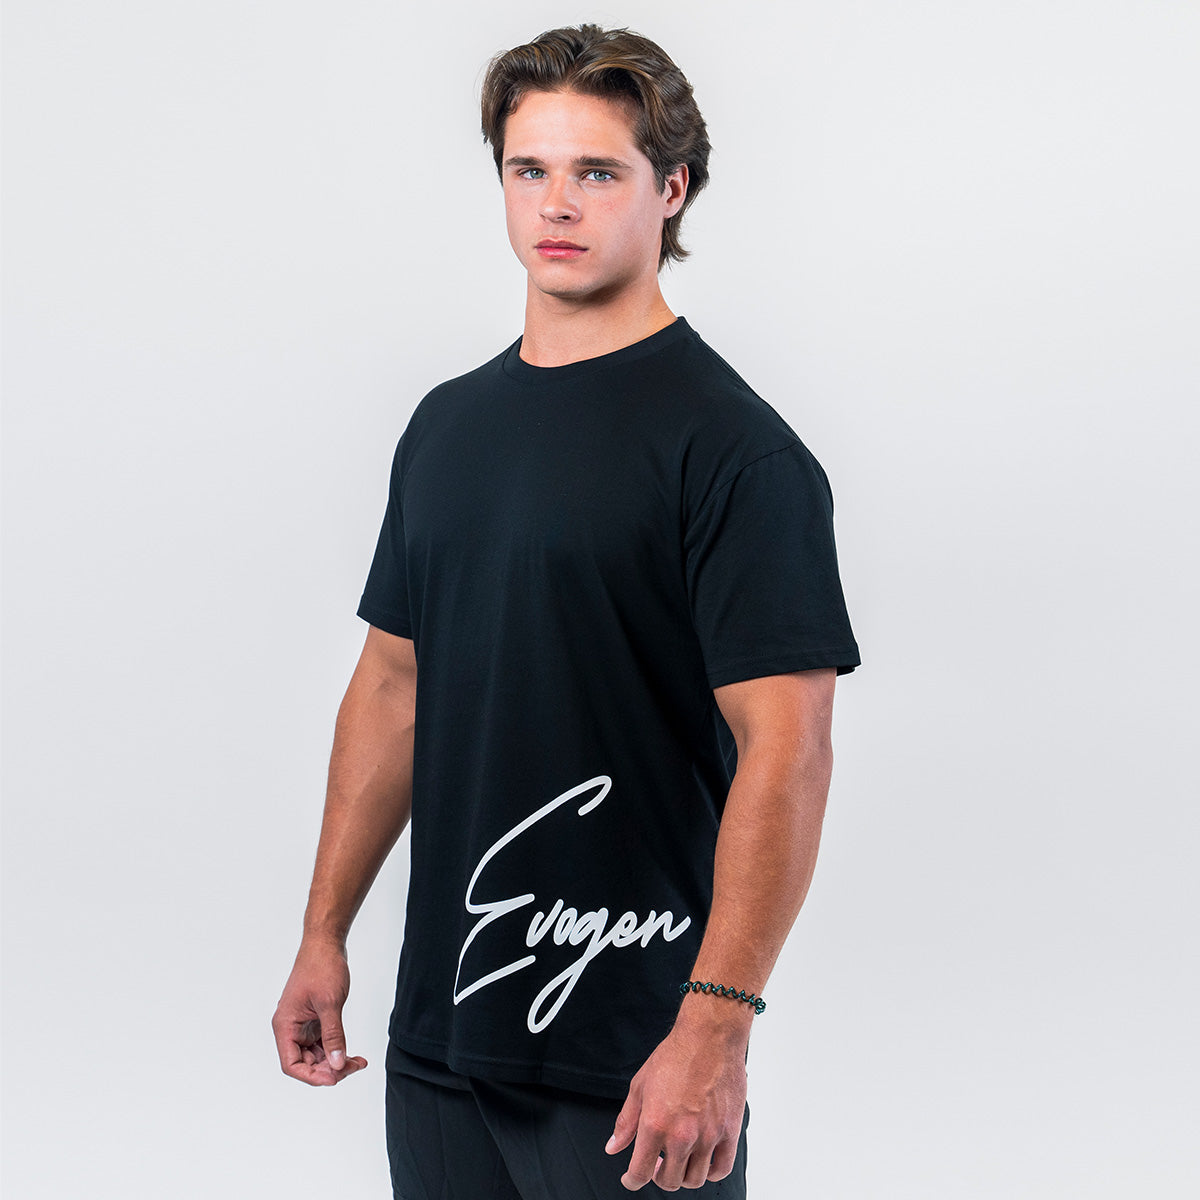 Evogen Signature T-Shirt - Black Men's Apparel